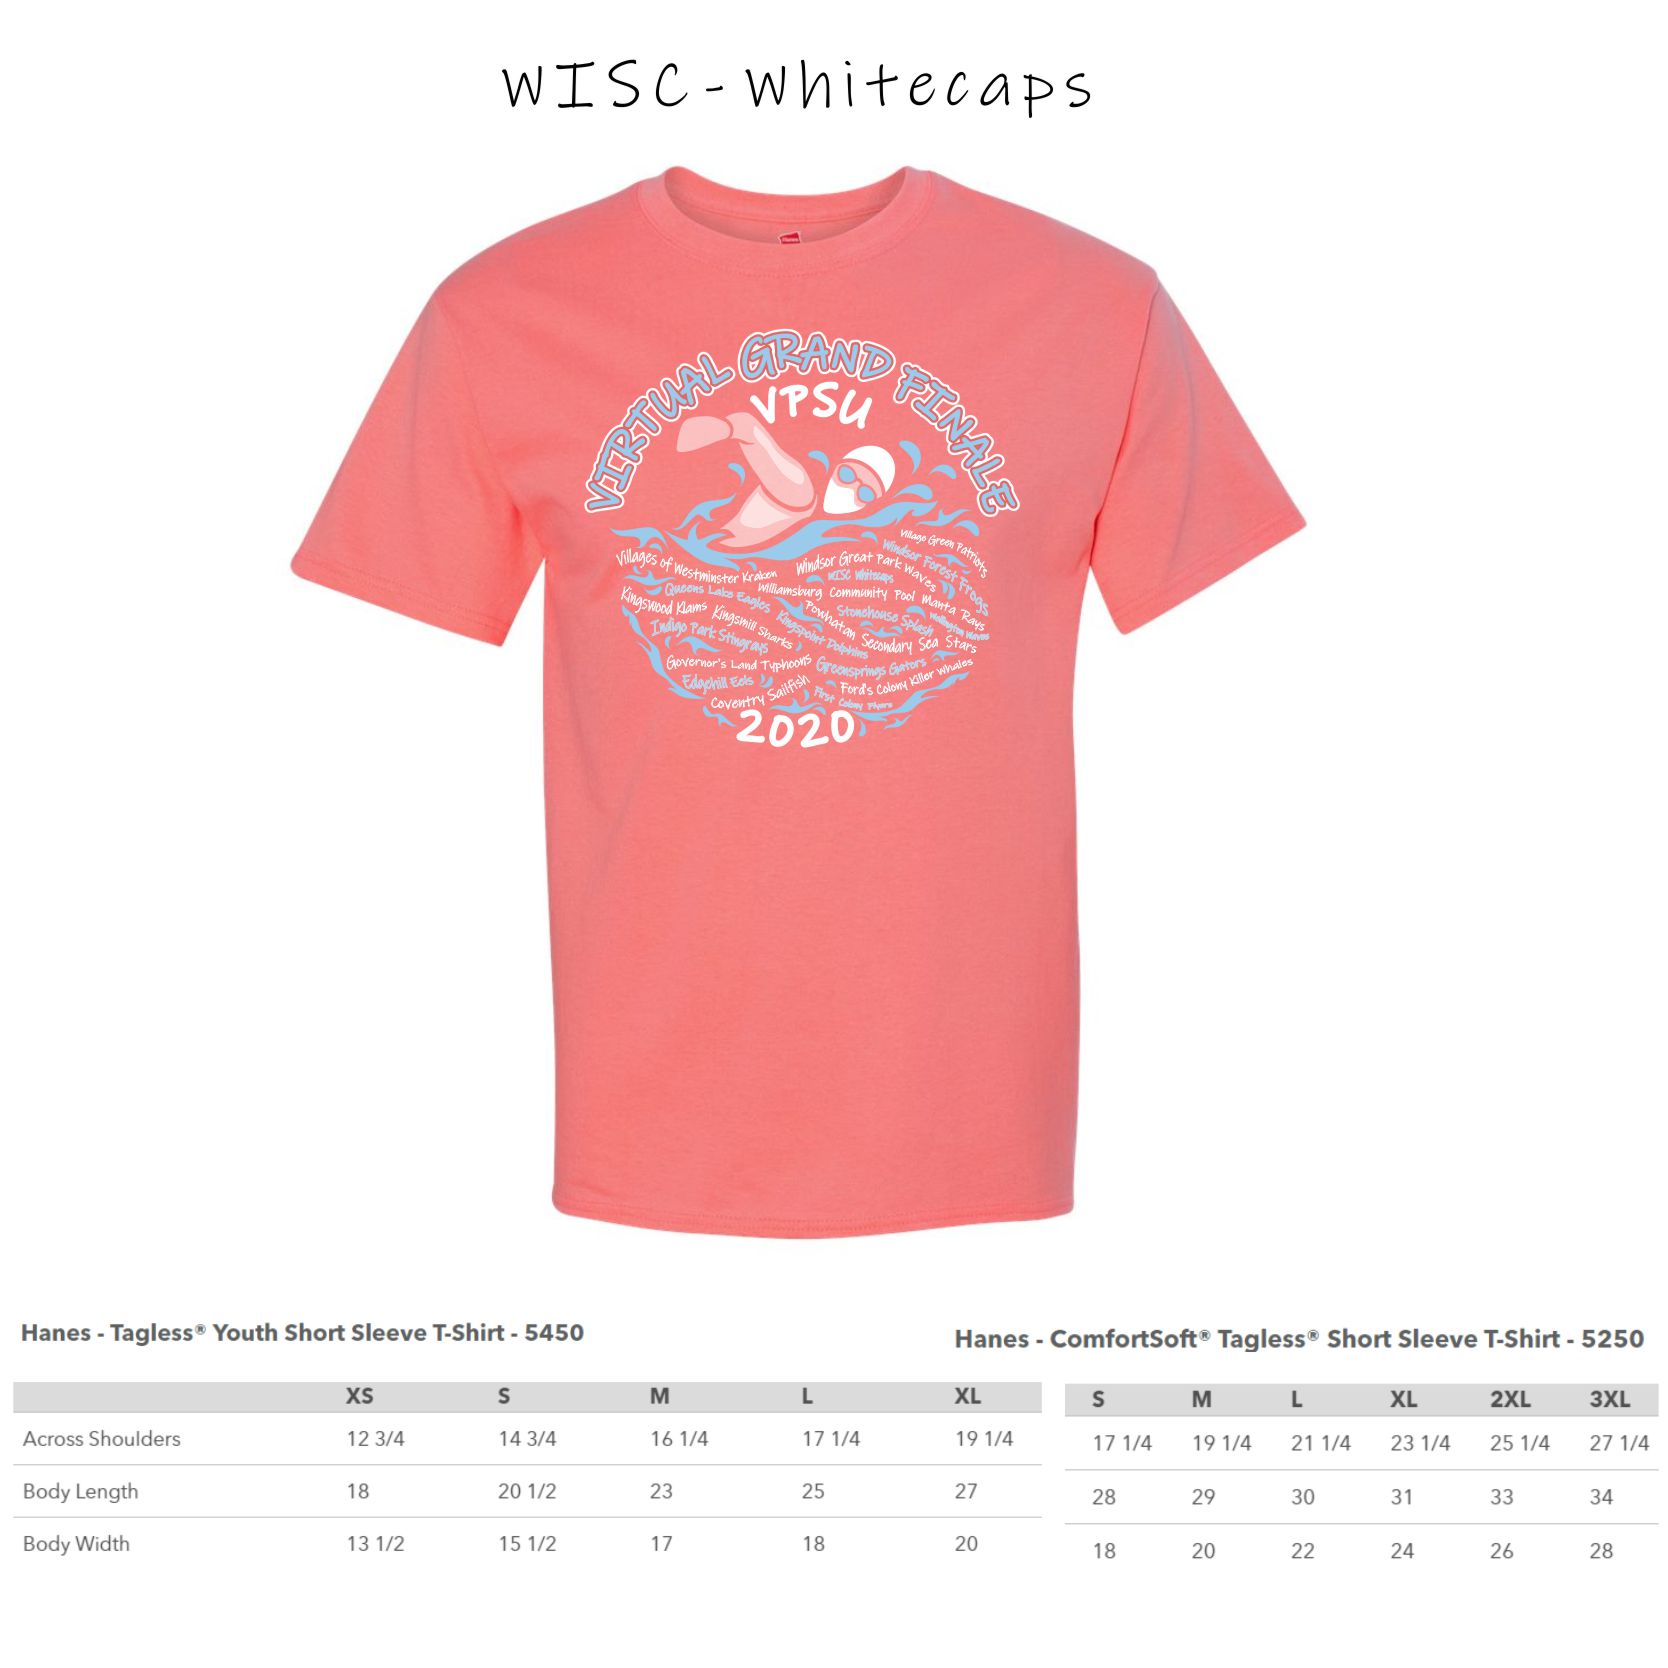 1 - WISC Whitecaps